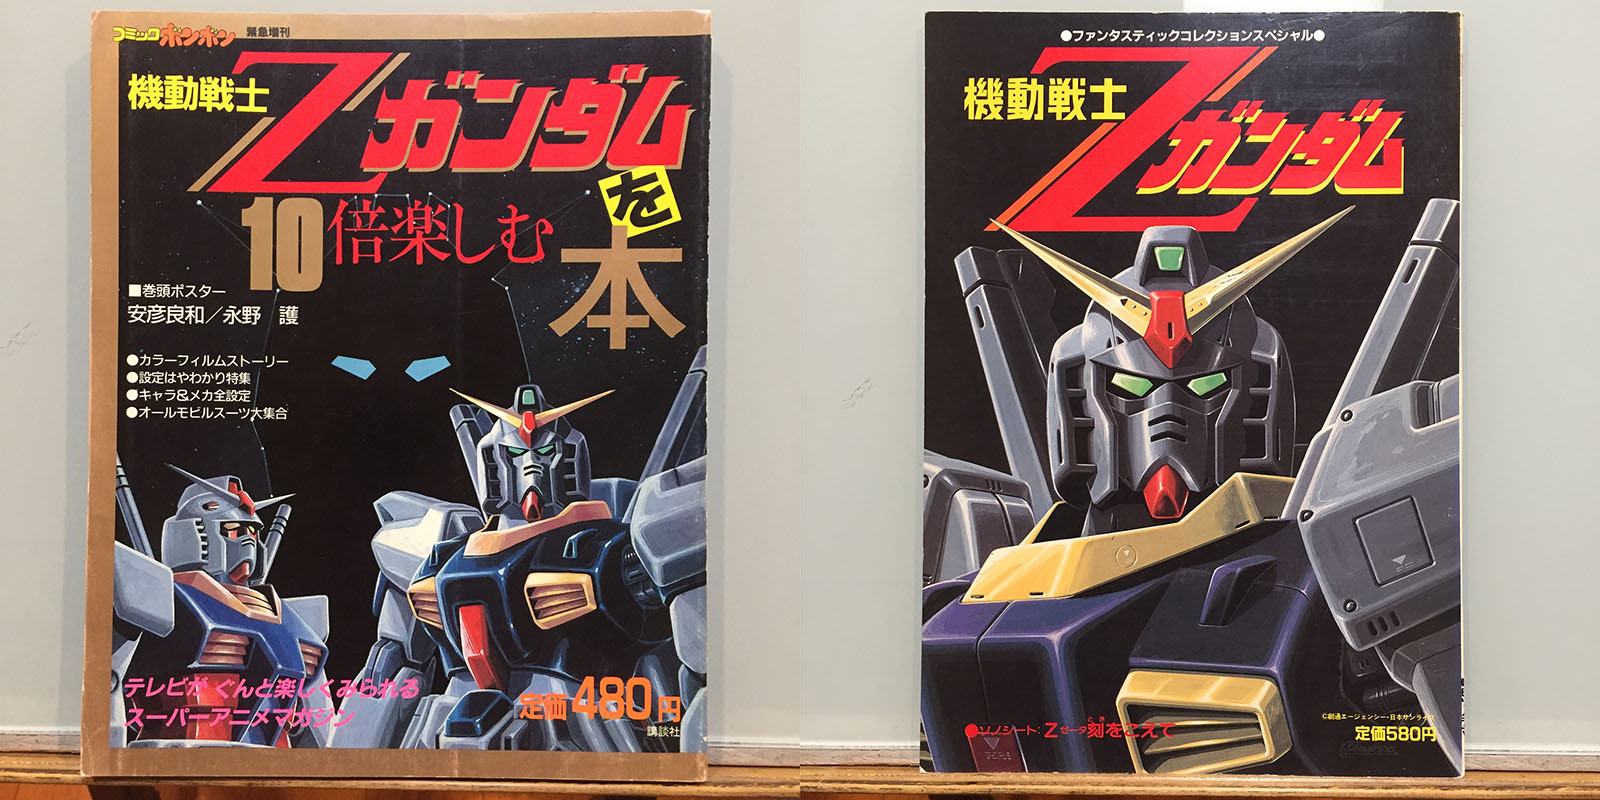 Mobile Suit Gundam books, set 2 | Tim Eldred